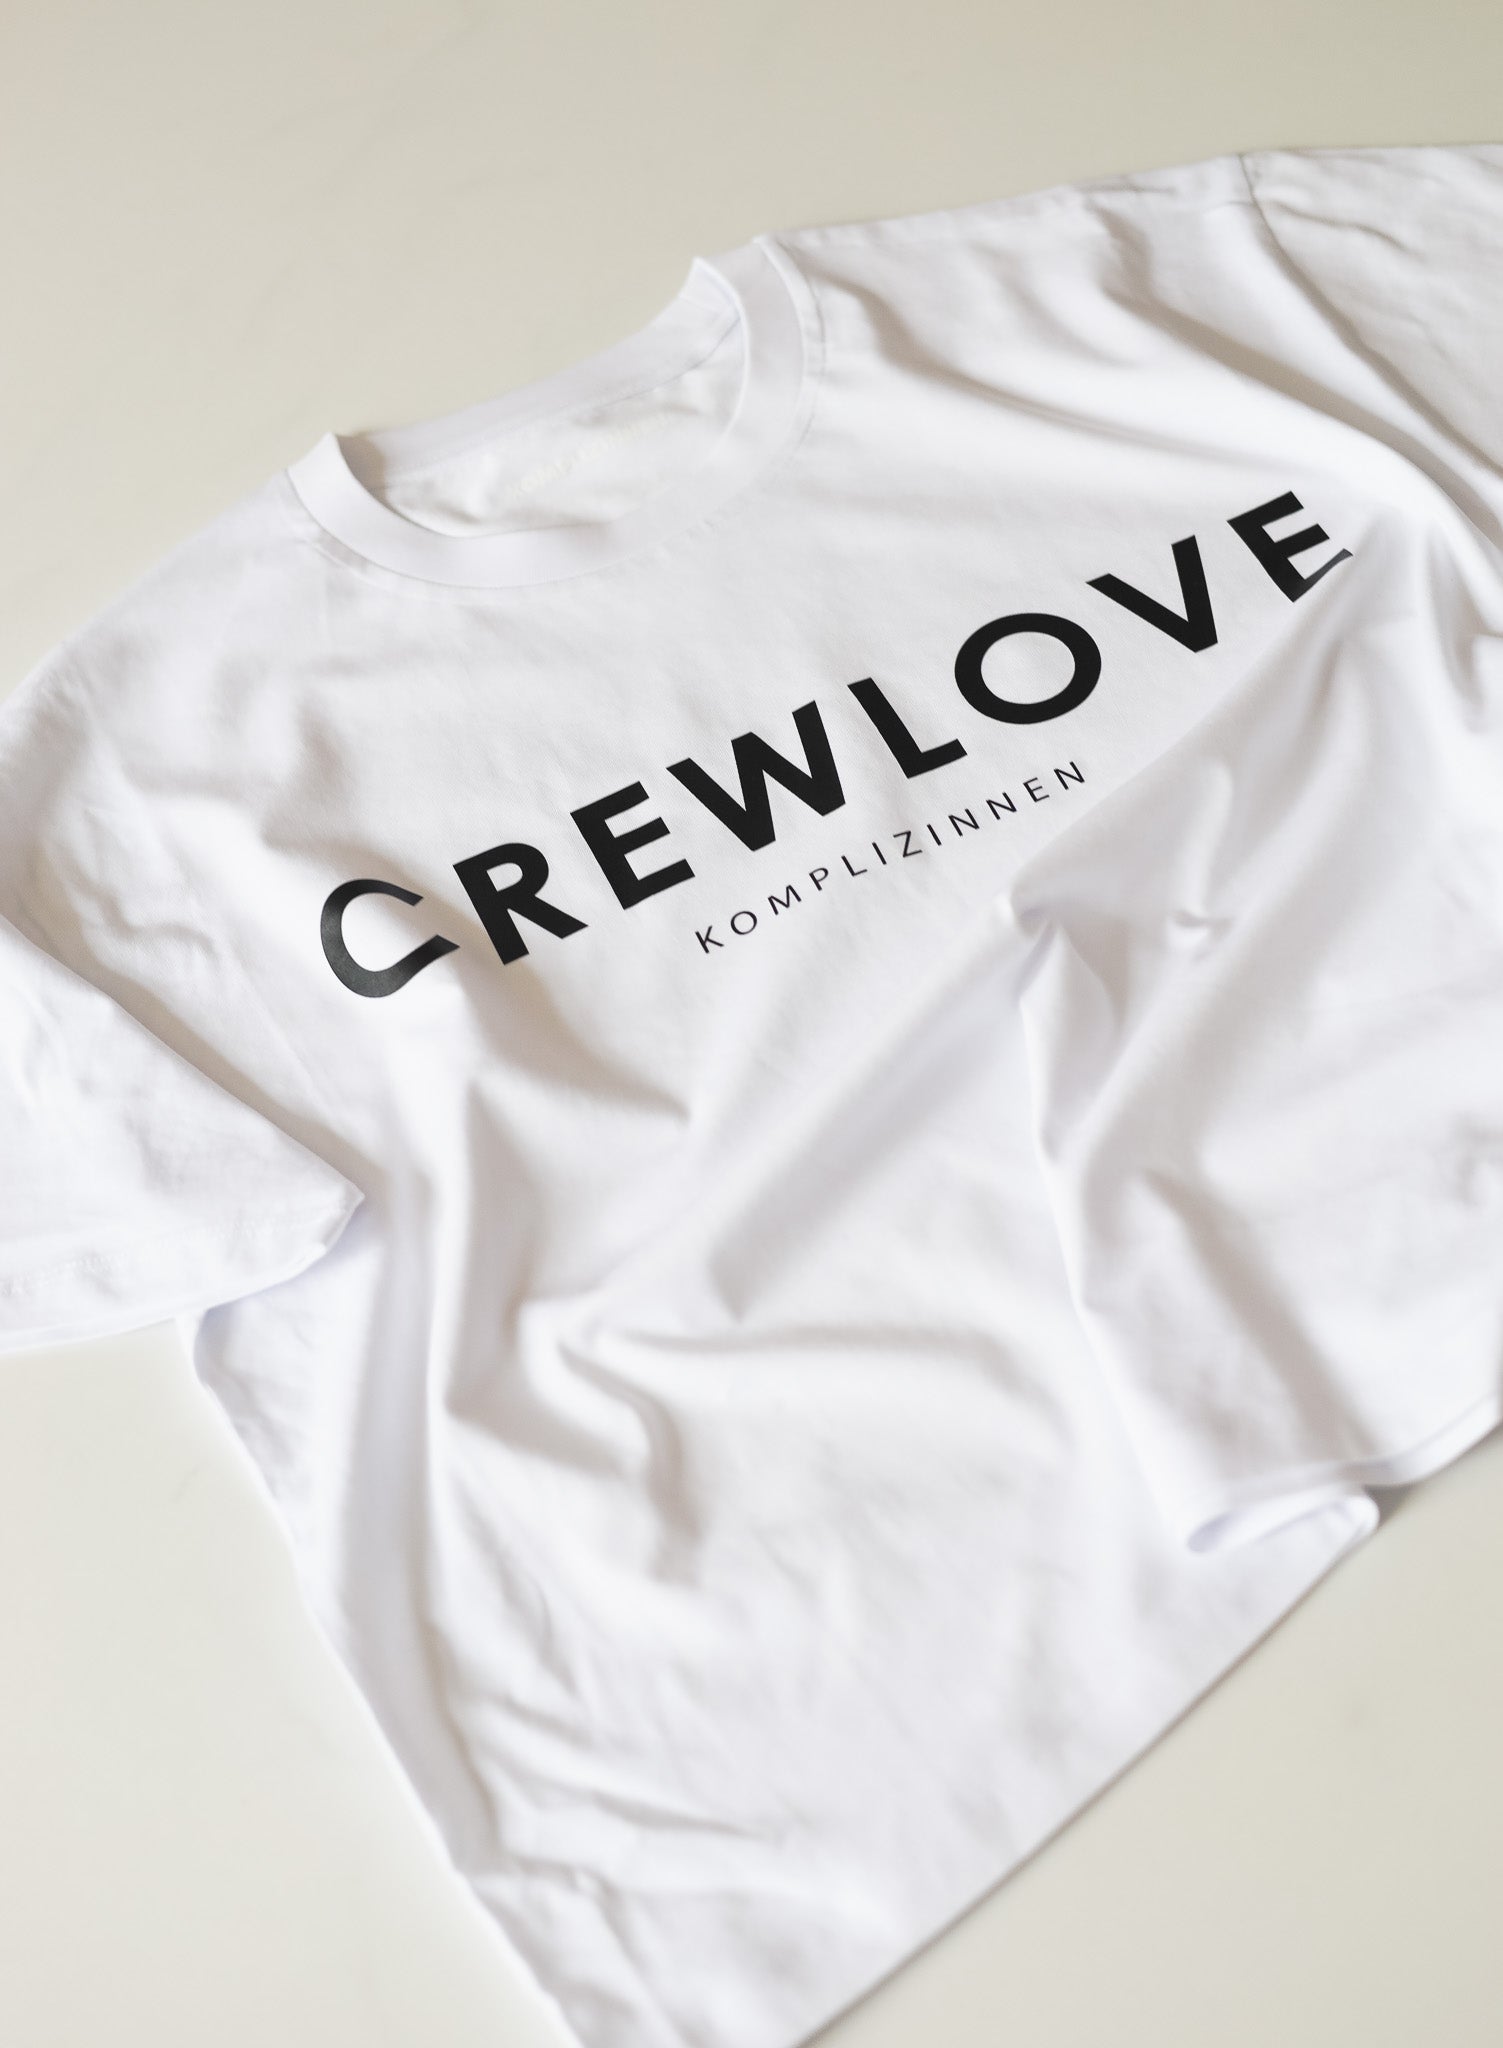 CREWLOVE Shirt weiß/ schwarz Crop